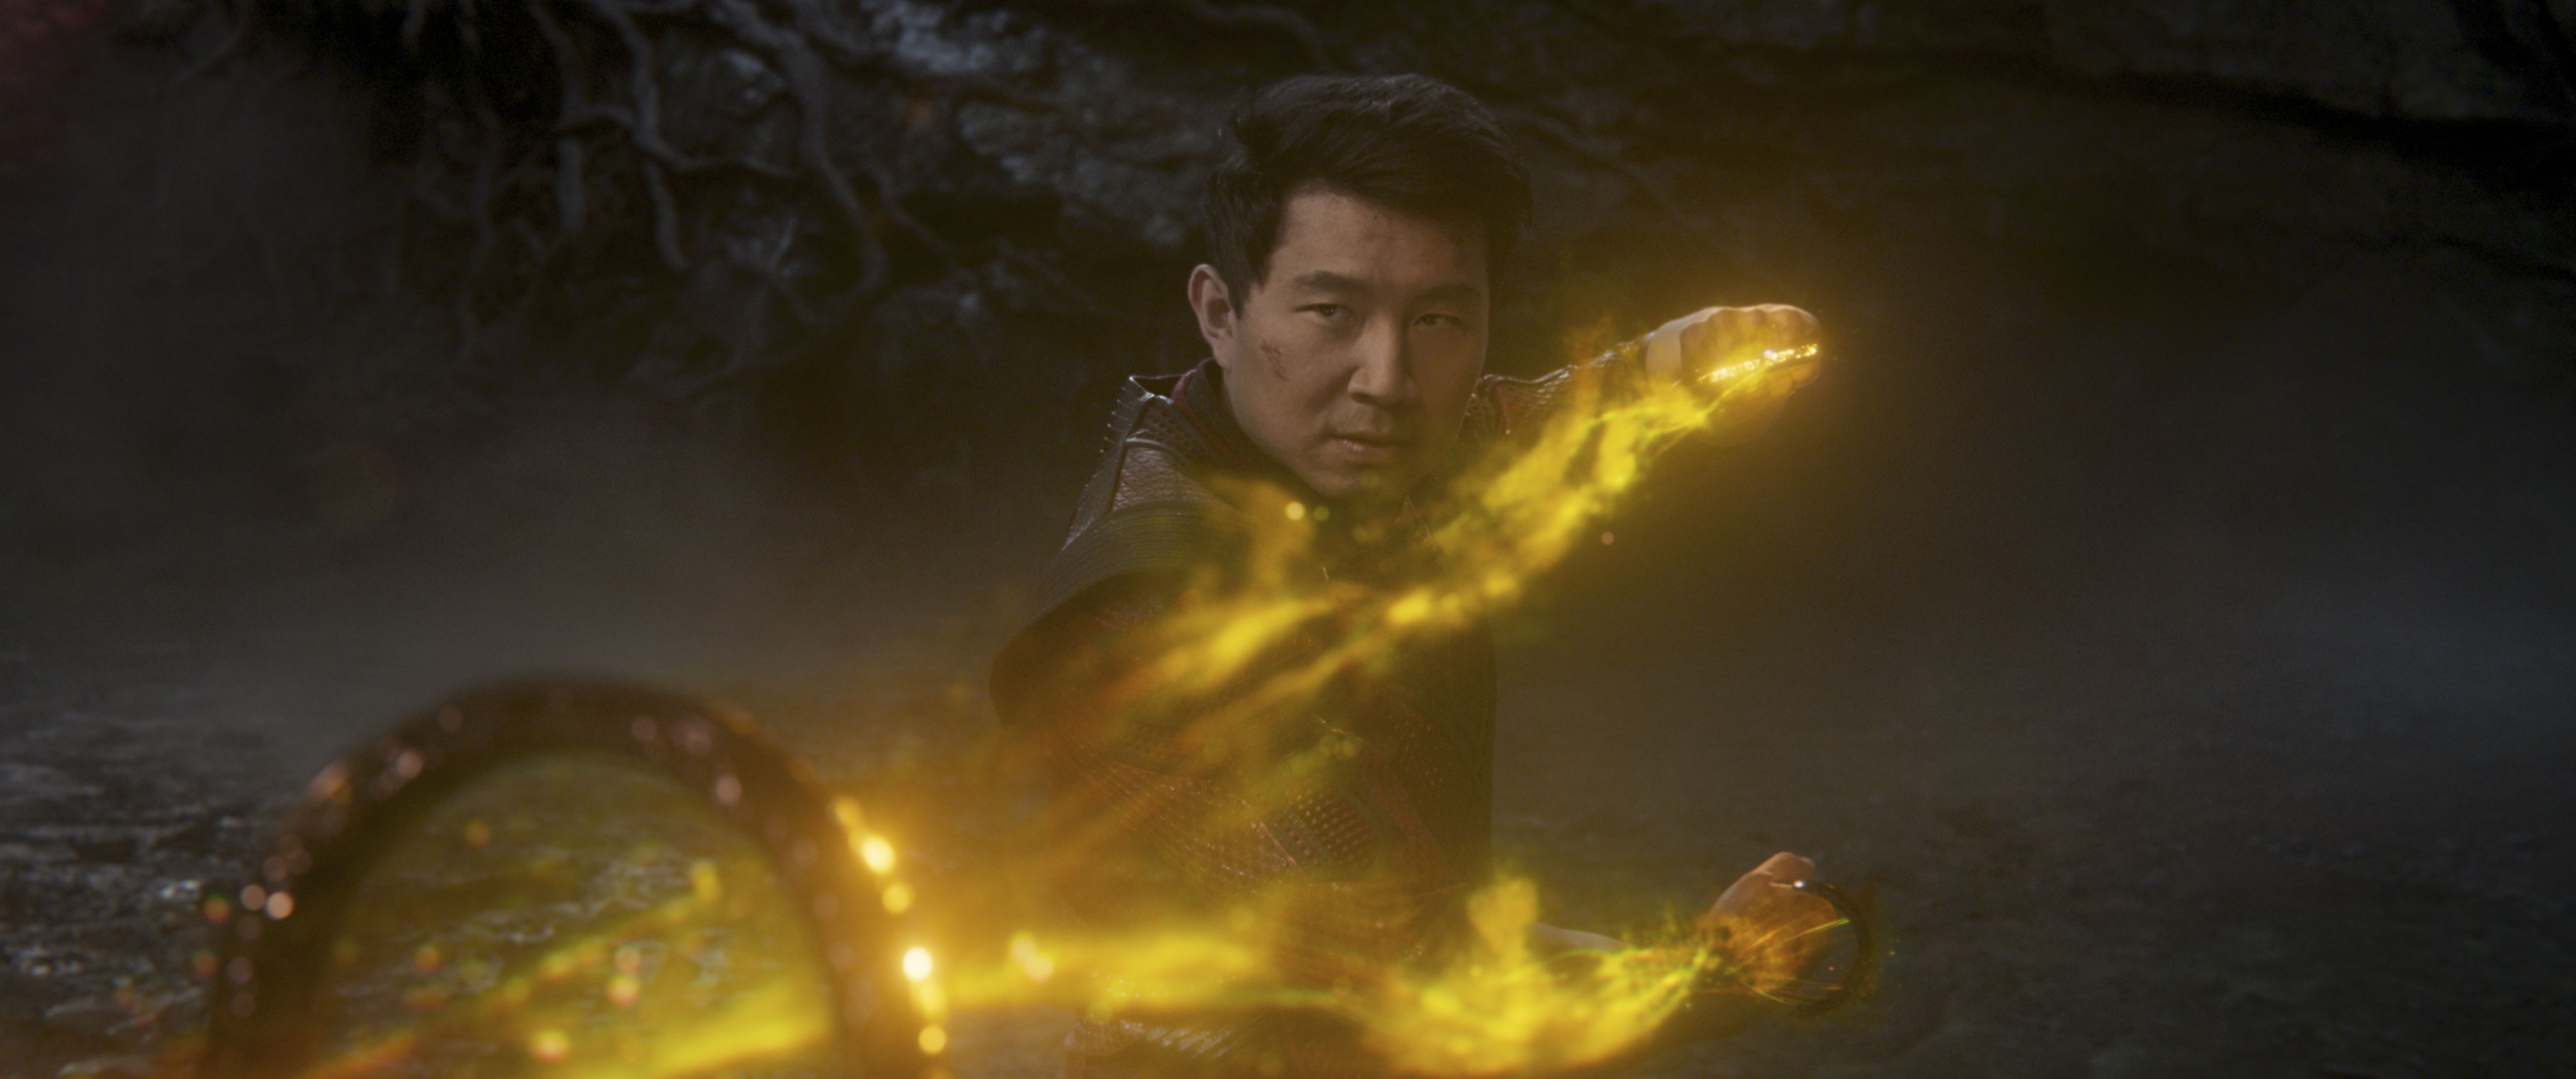 Marvel estrena ‘Shang-Chi y la leyenda de los diez anillos’ en salas de cine de Ecuador